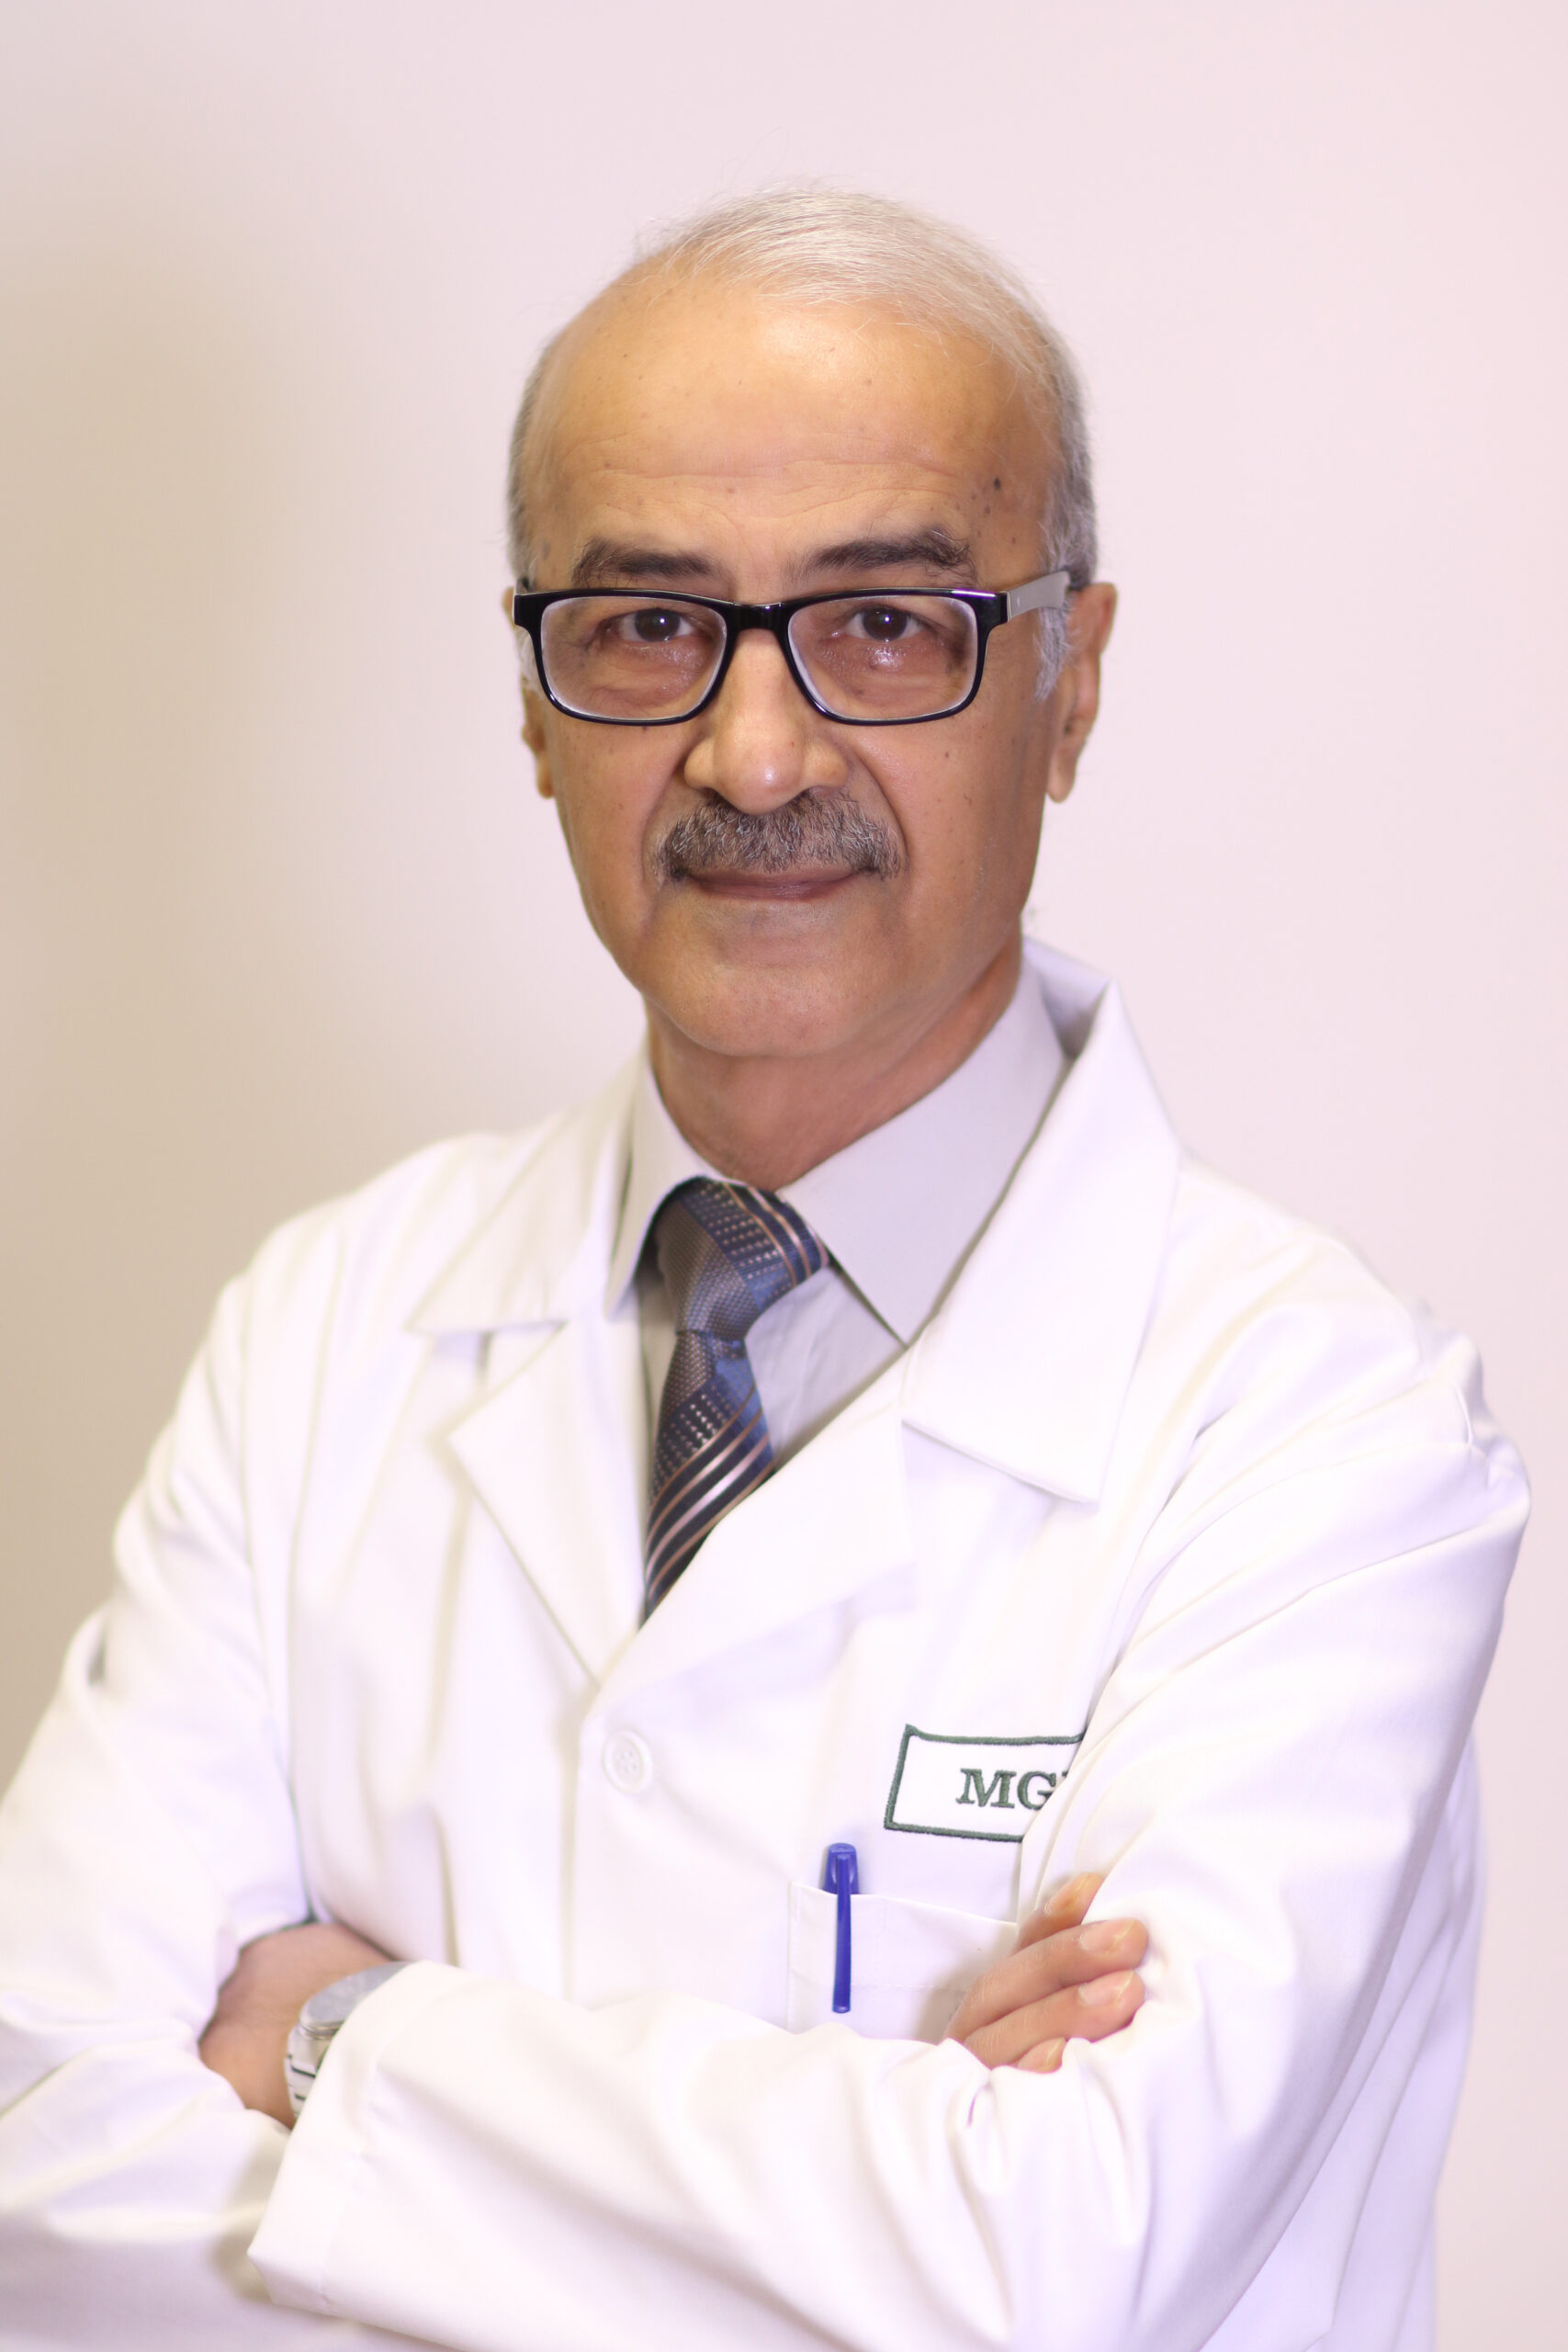 Talal Kassar, MD